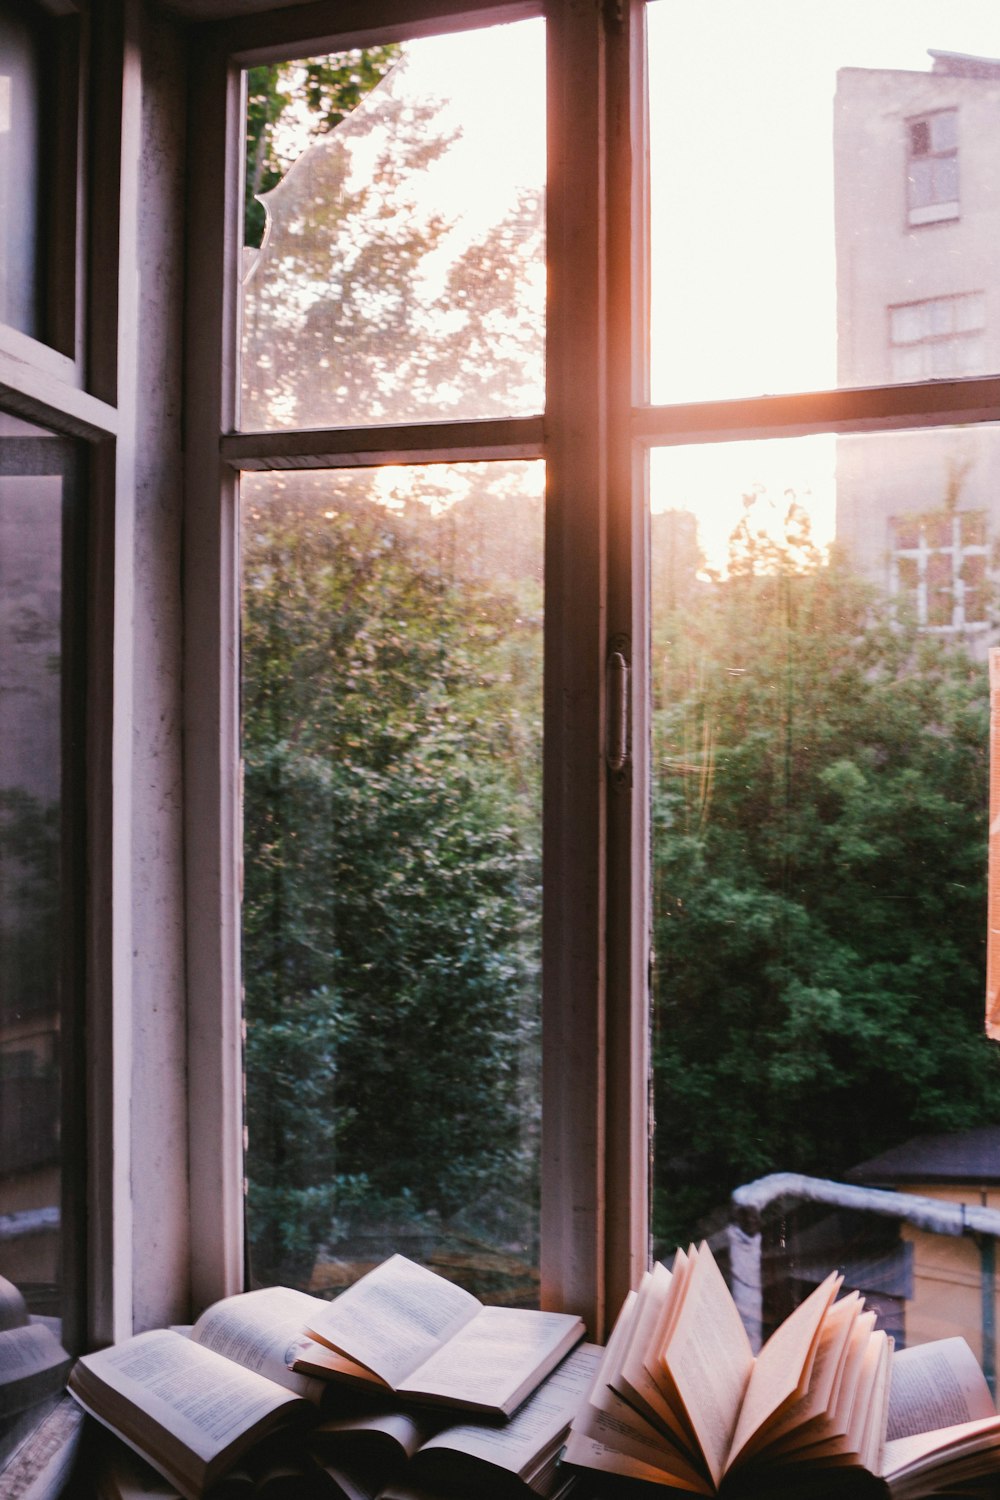 Libros al lado de la ventana durante la puesta de sol